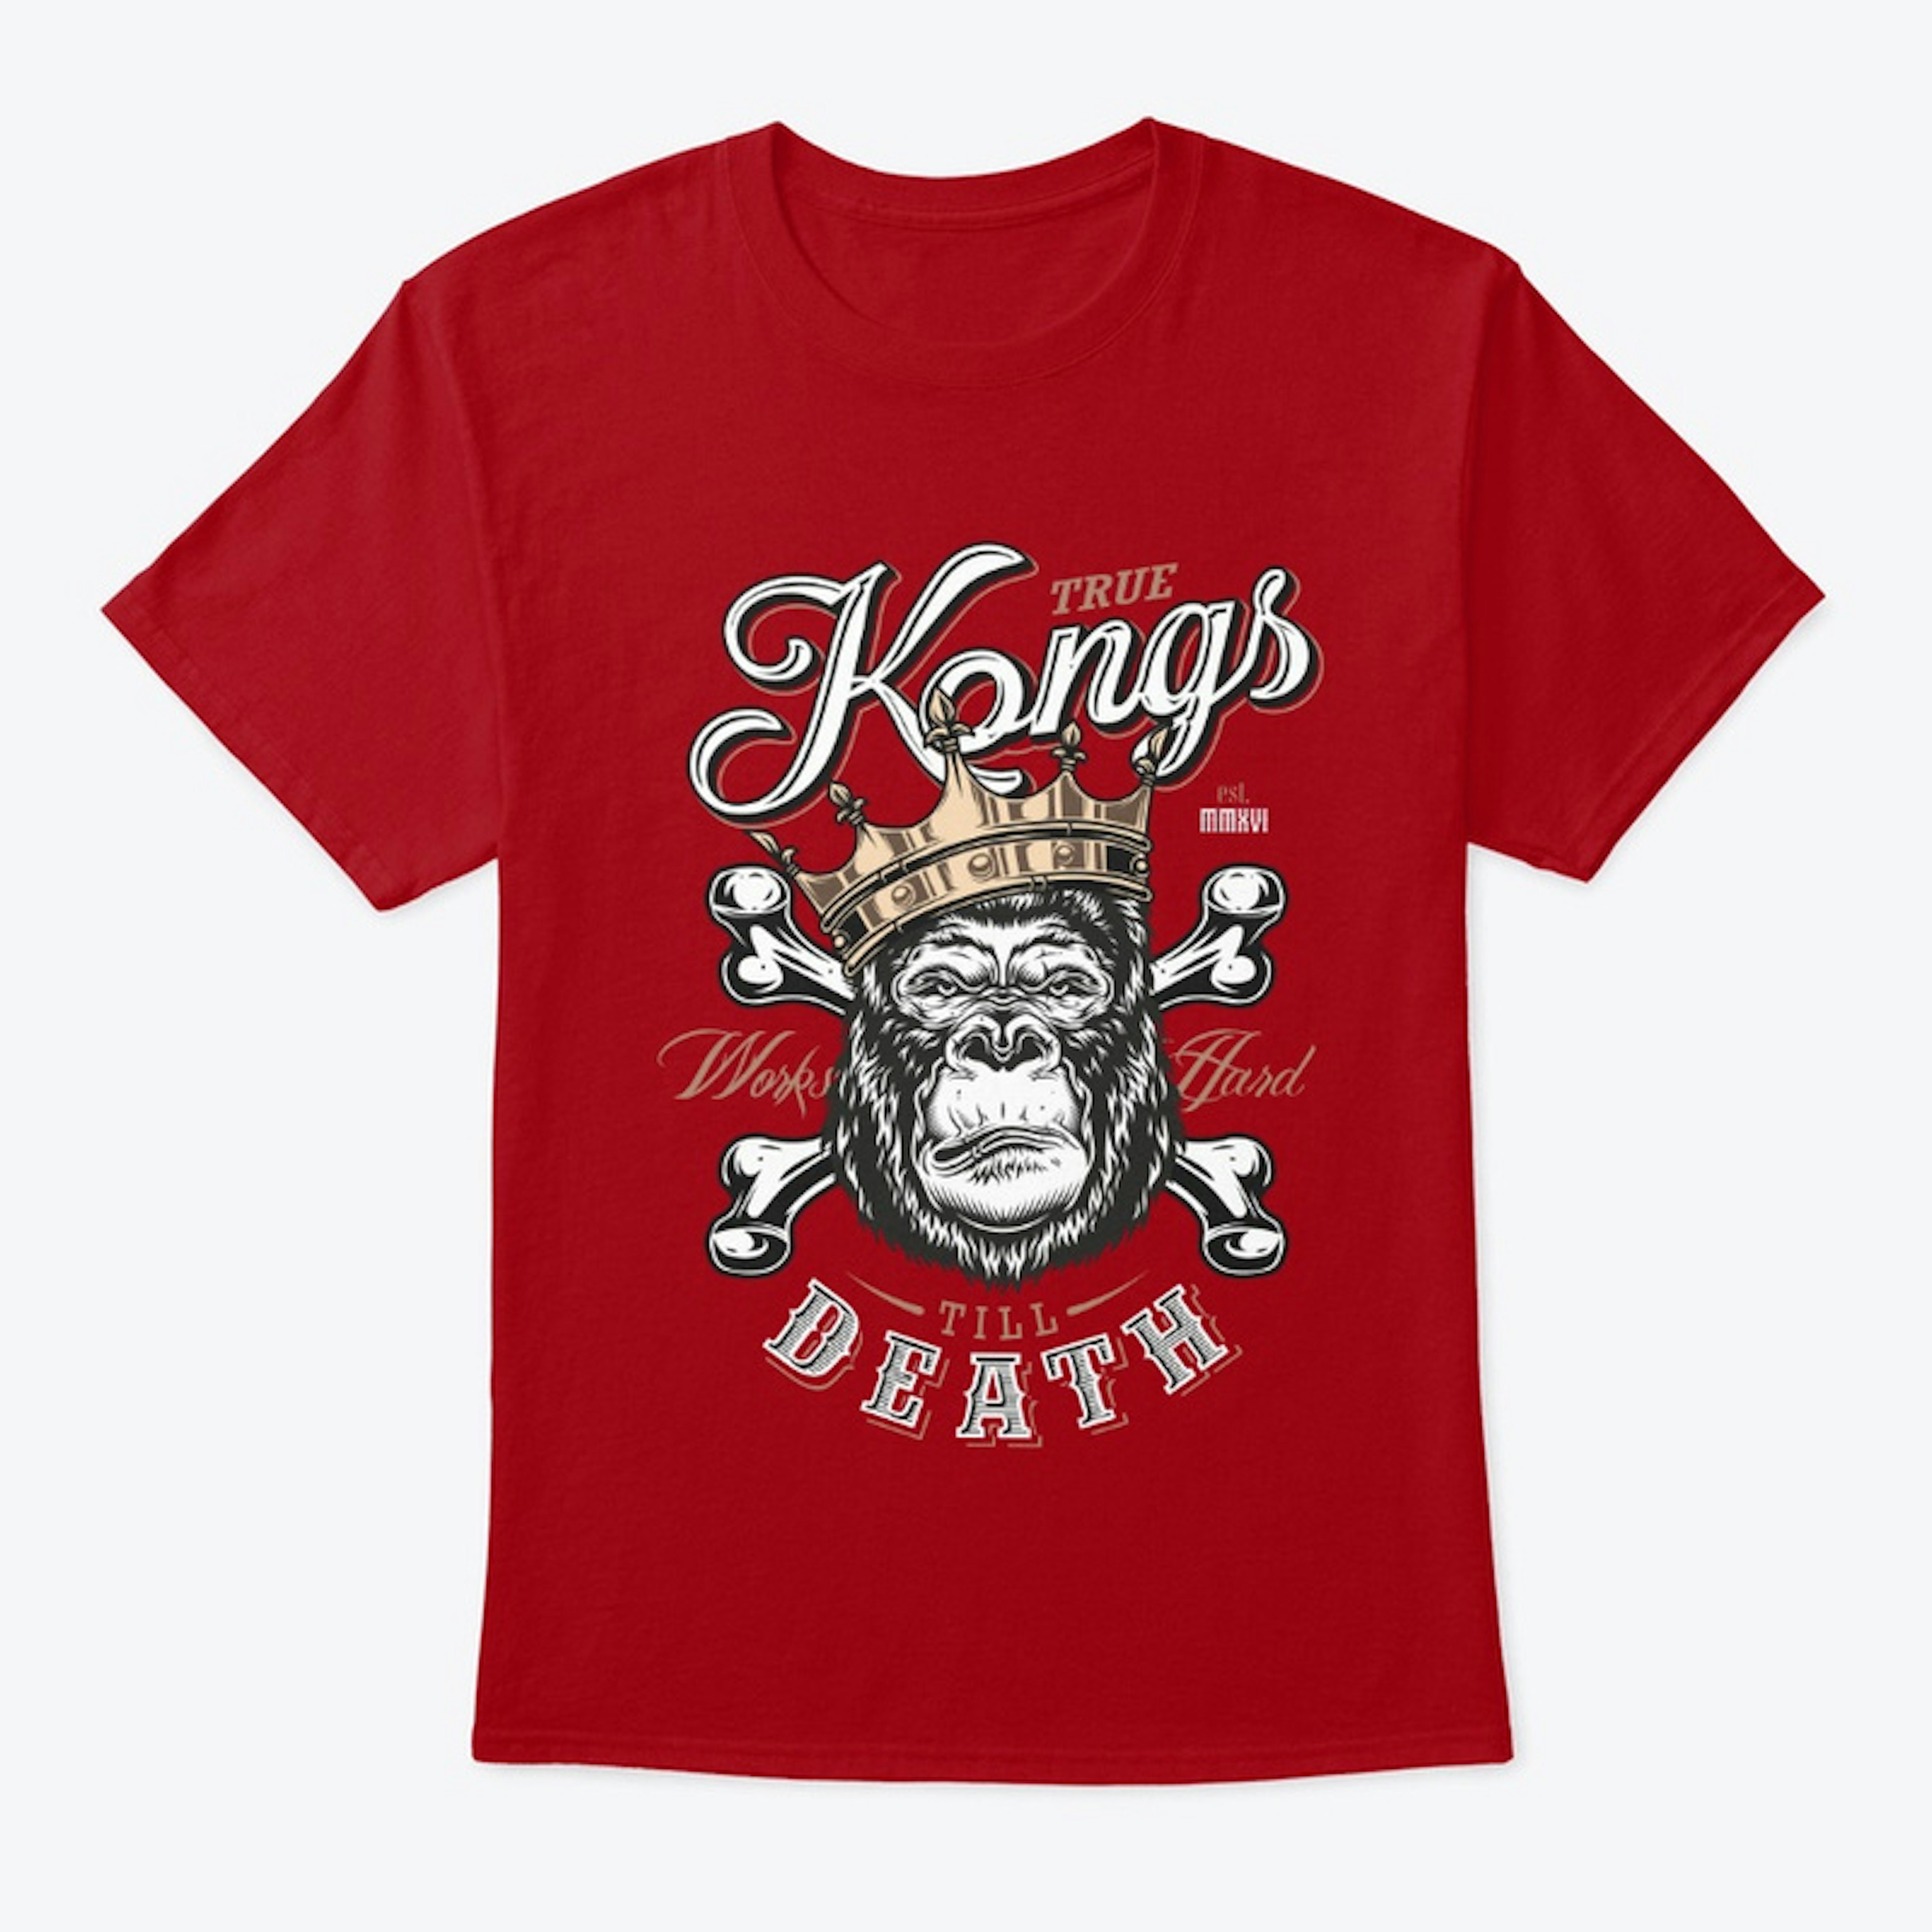 True Kongs